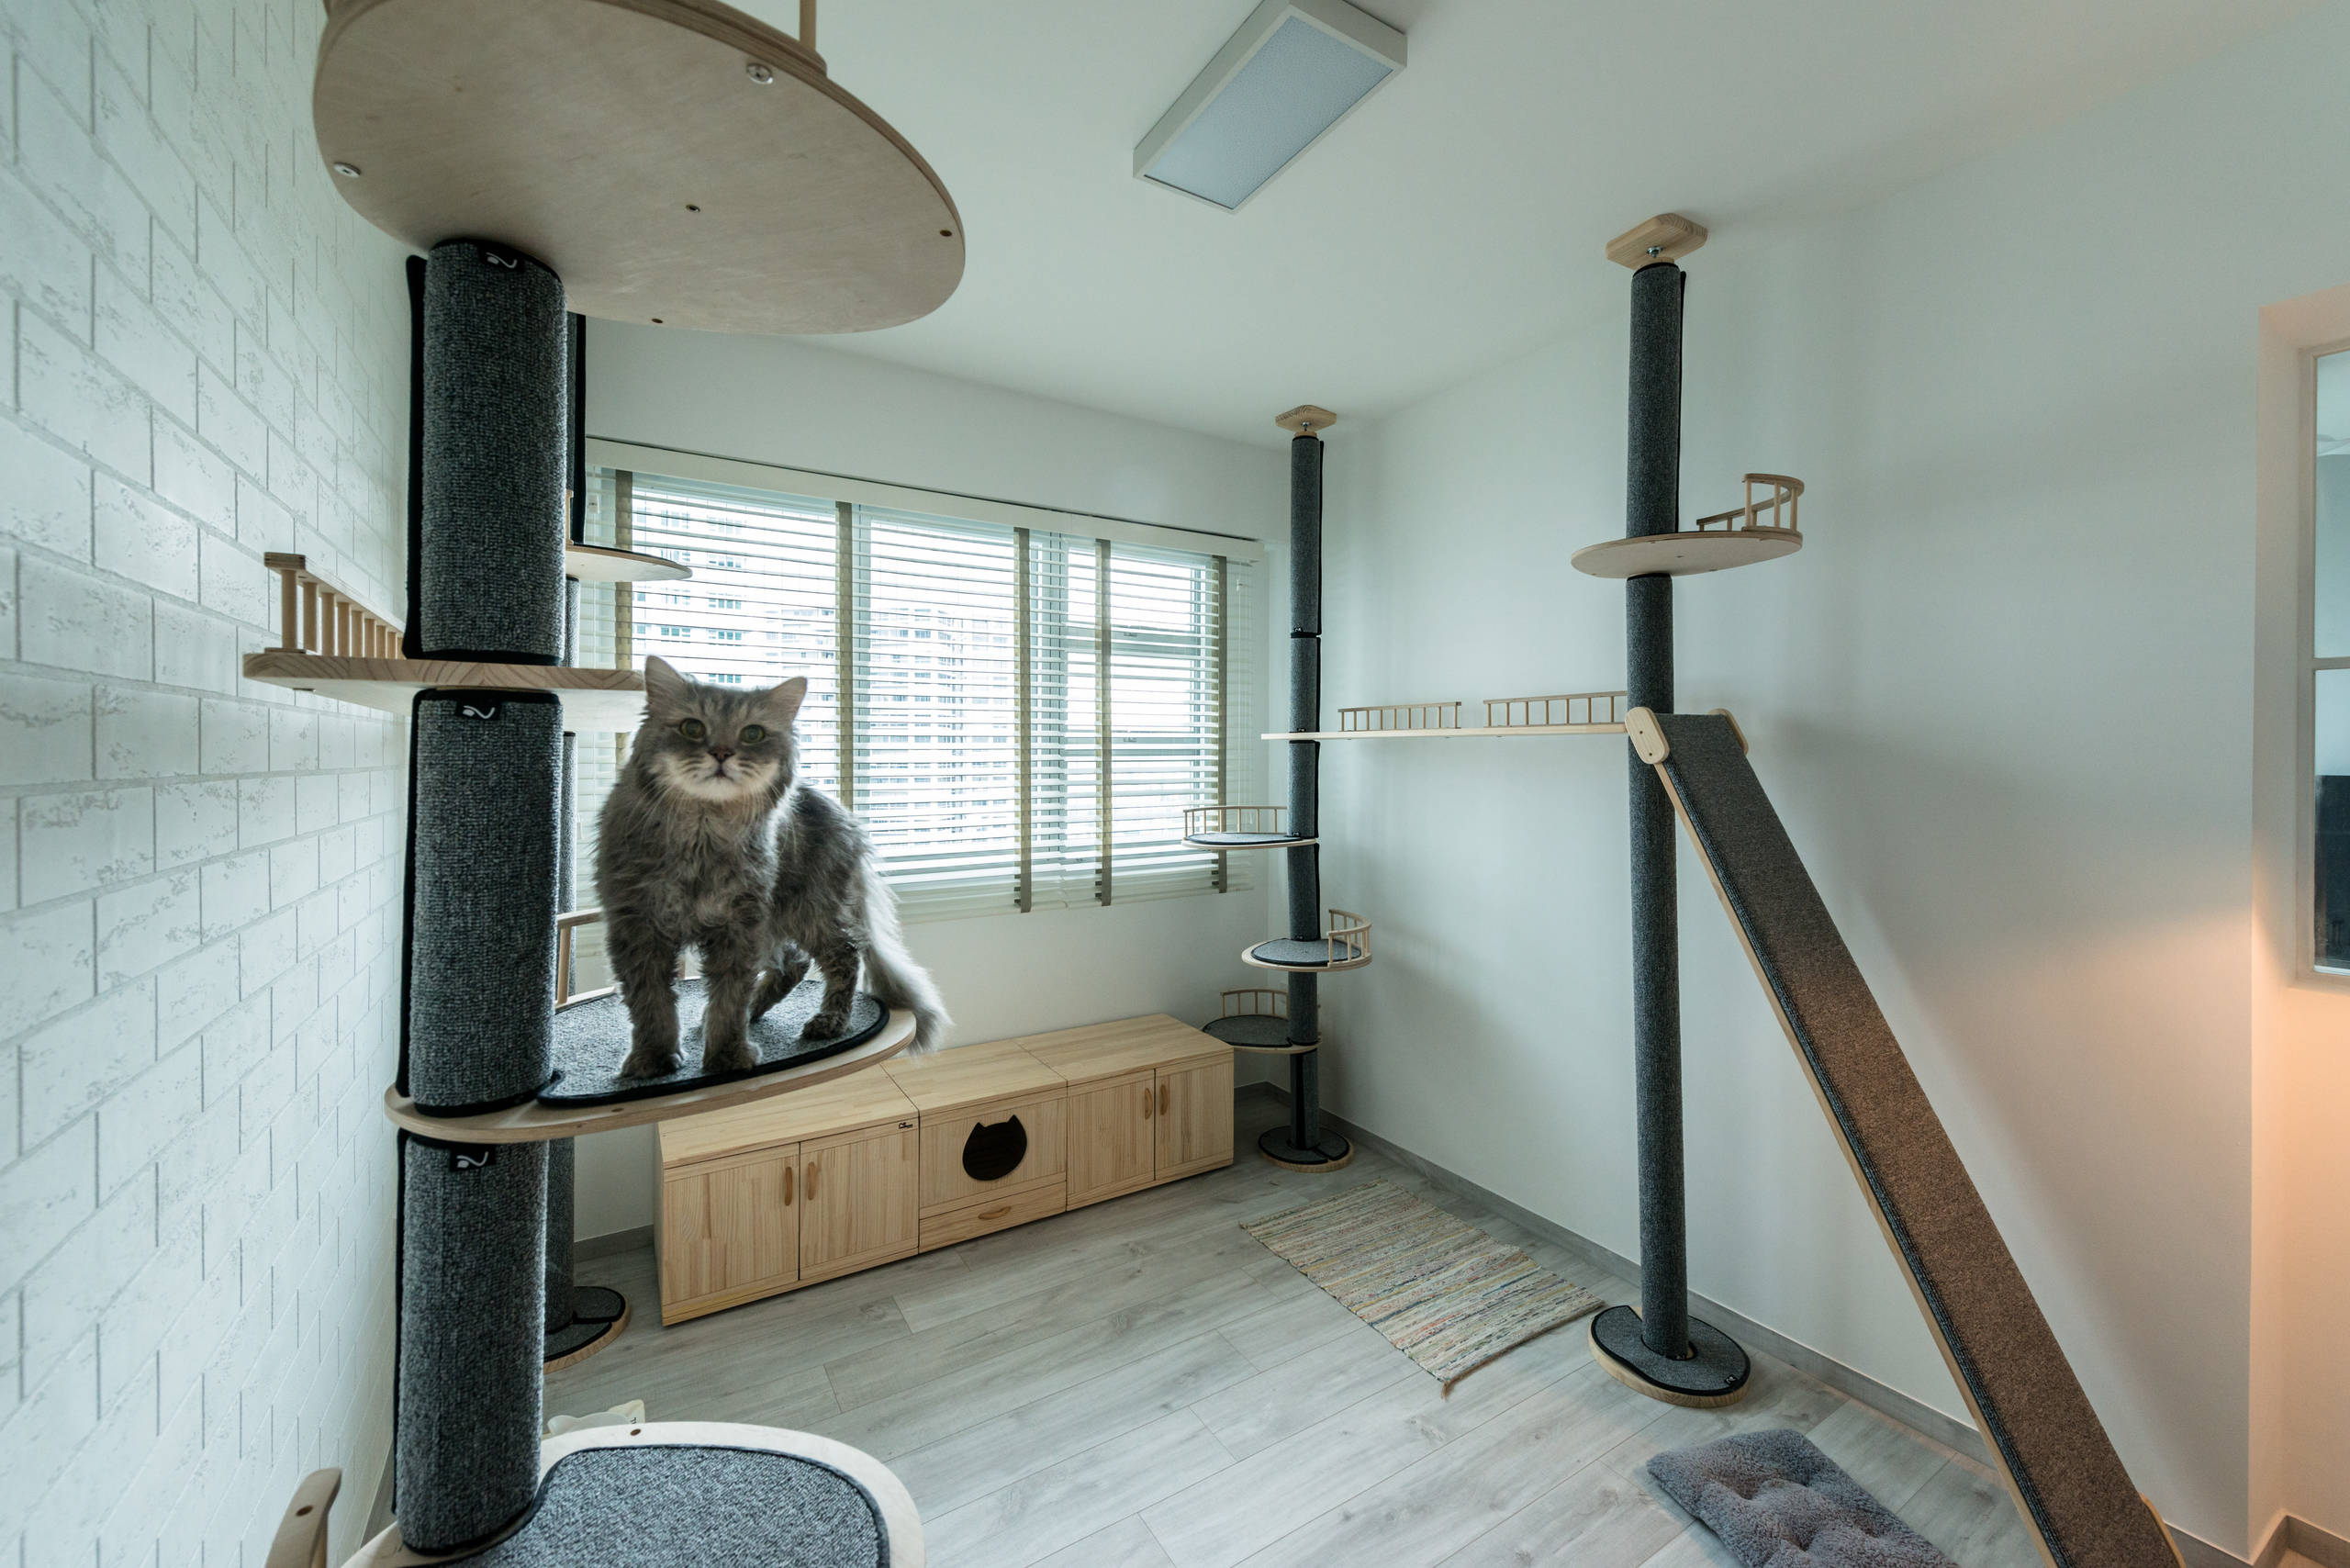 Что можно сделать для кошки: 8 мест для кошки в квартире – дерево, домик,  лазы | Houzz Россия